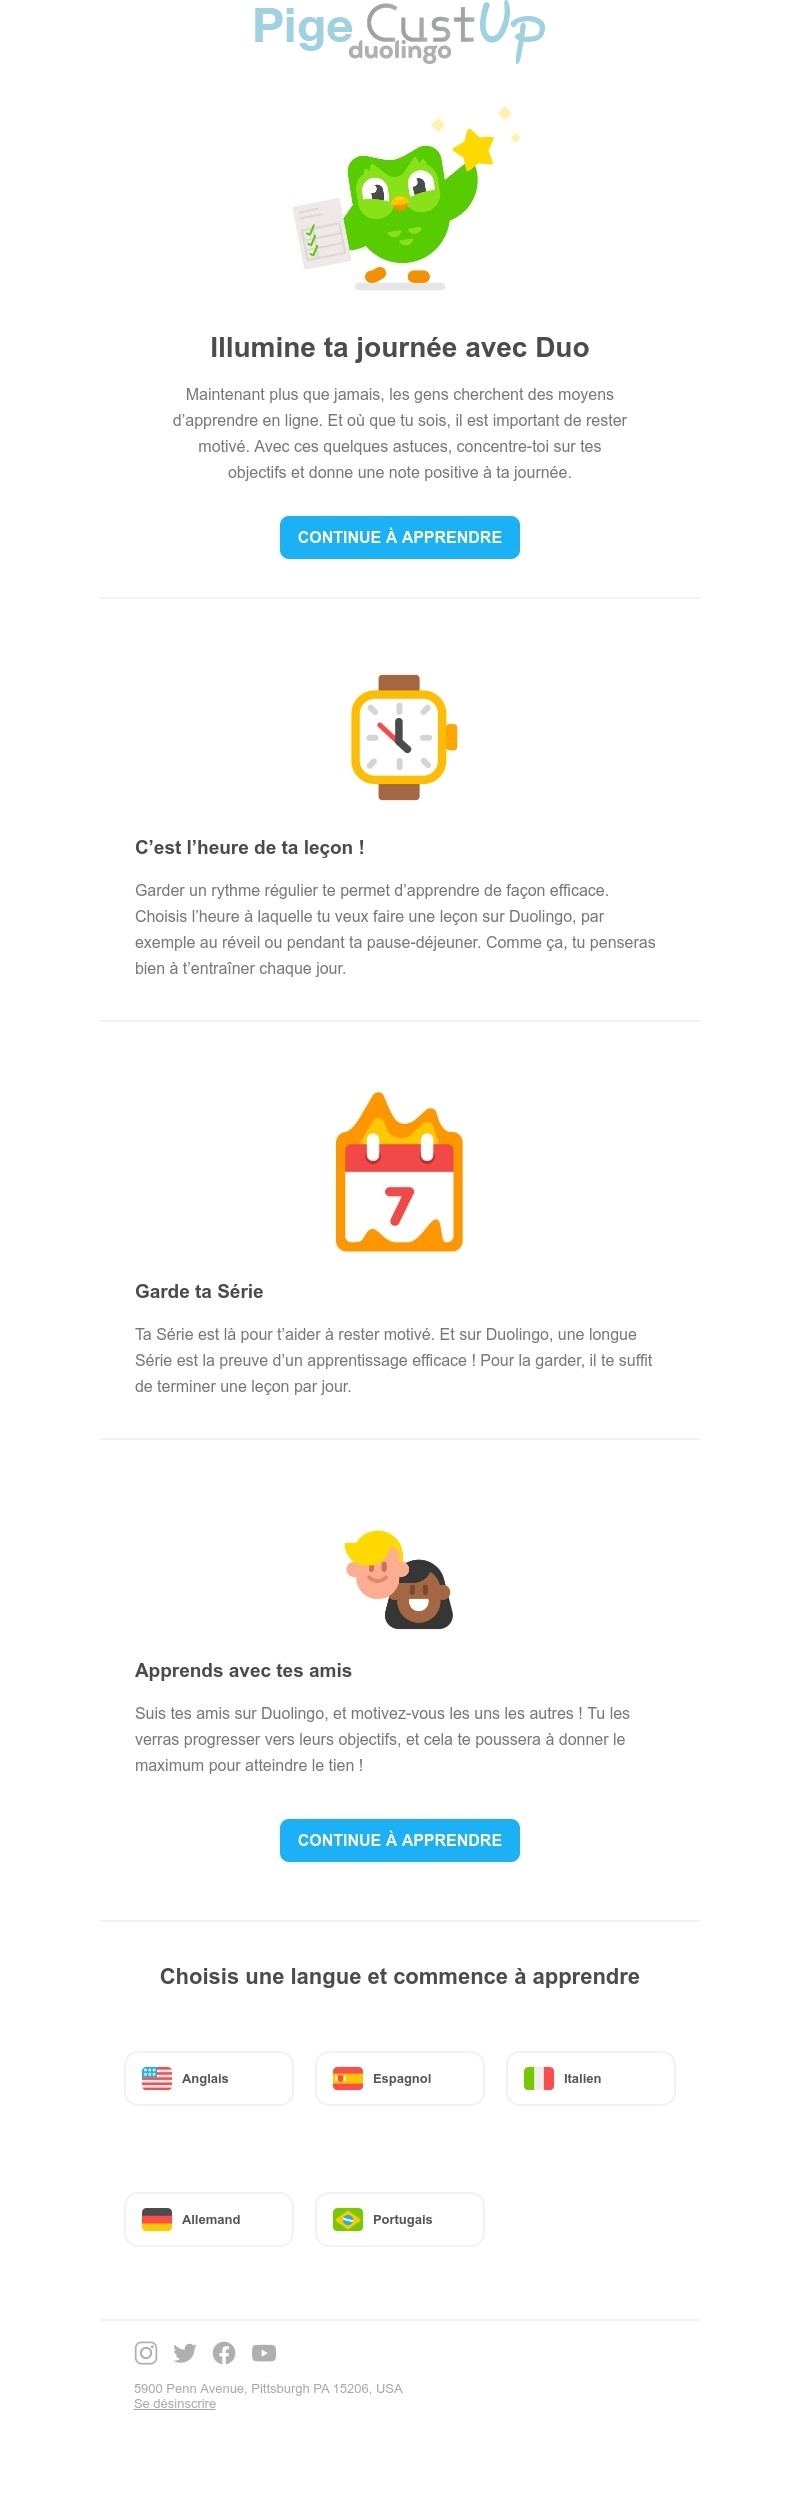 Exemple de Type de media  e-mailing - Duolingo - Marketing marque - Communication Services - Nouveaux Services - Marketing relationnel - Newsletter